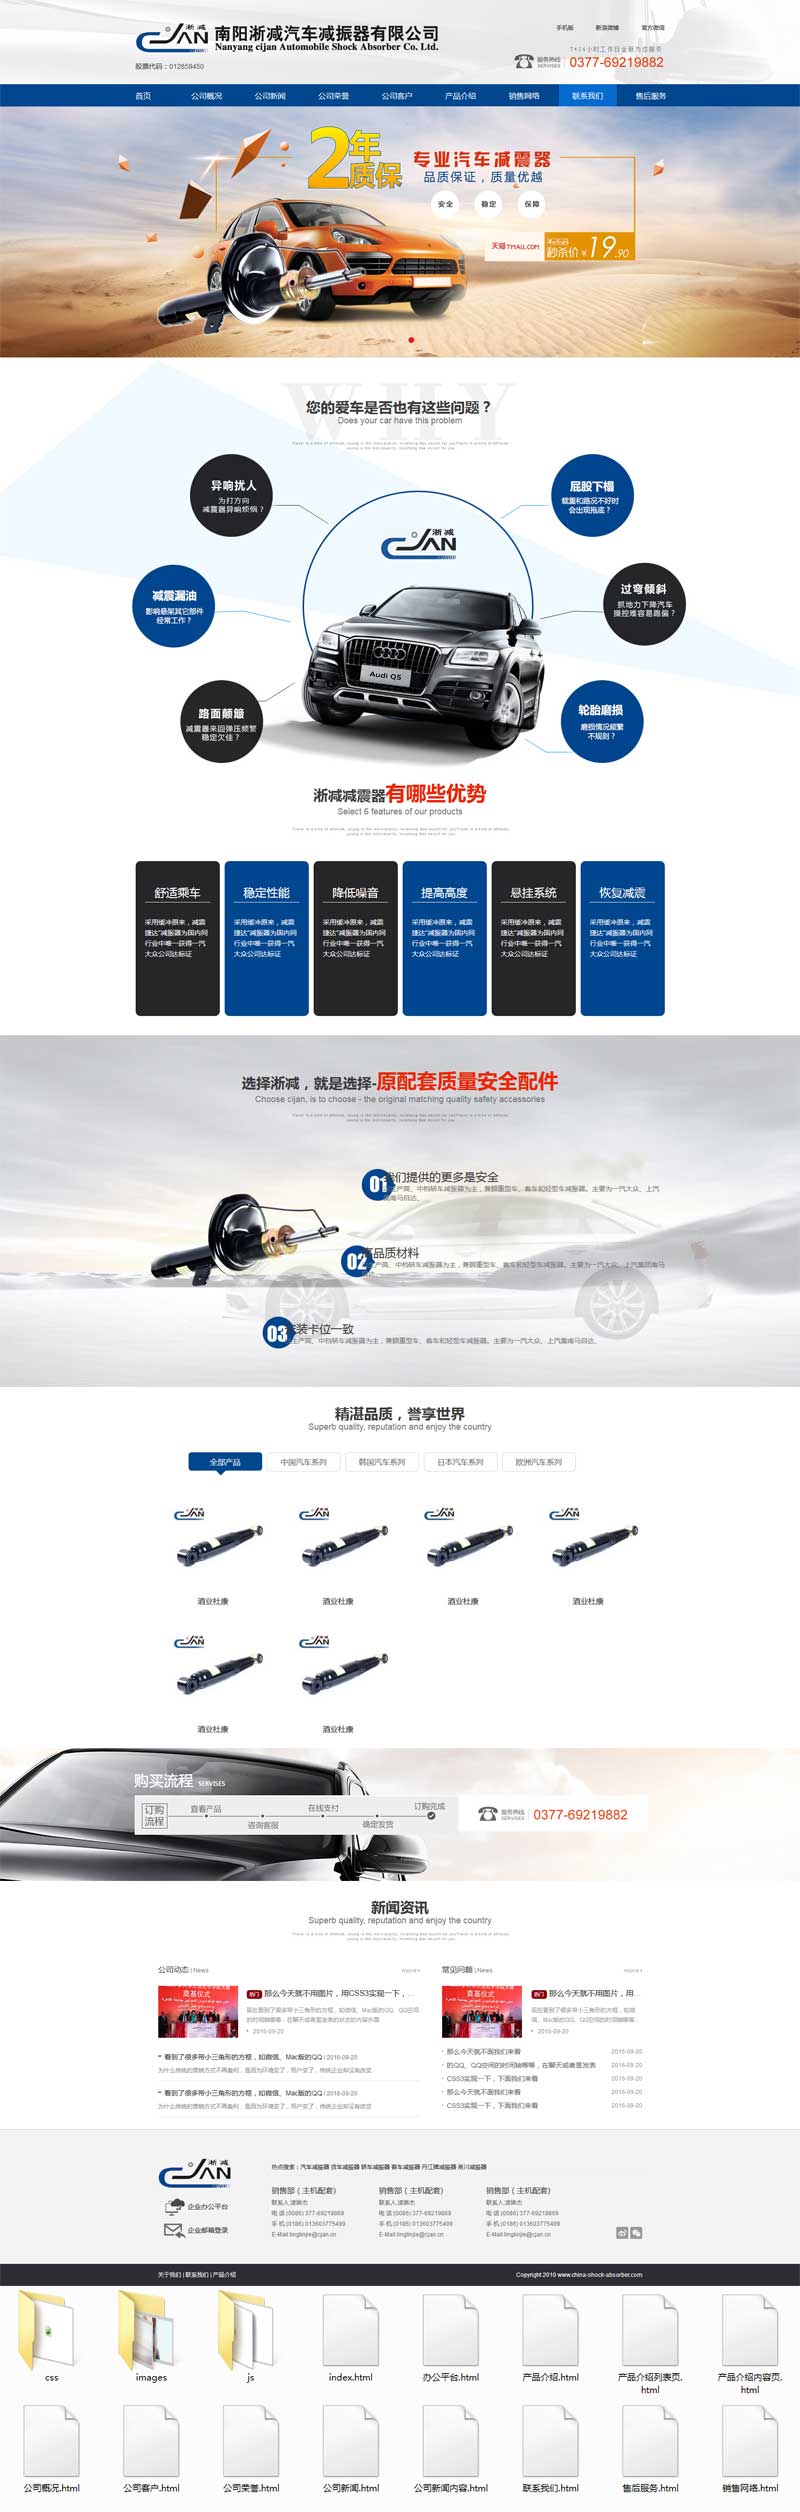 蓝色的汽车设备营销企业网站模板